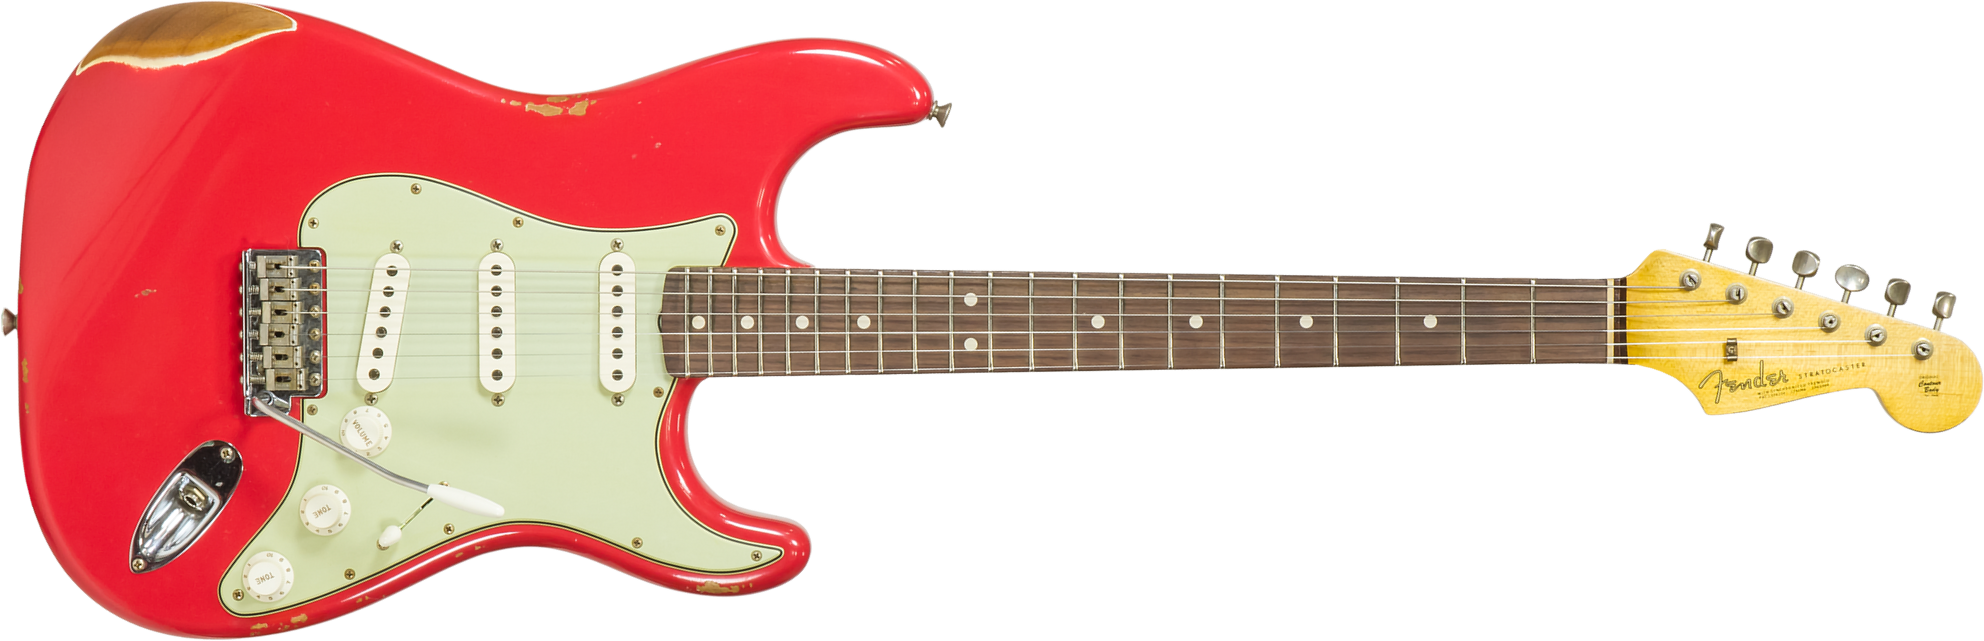 Fender Custom Shop Strat 1963 3s Trem Rw #r117571 - Relic Fiesta Red - Guitare Électrique Forme Str - Main picture